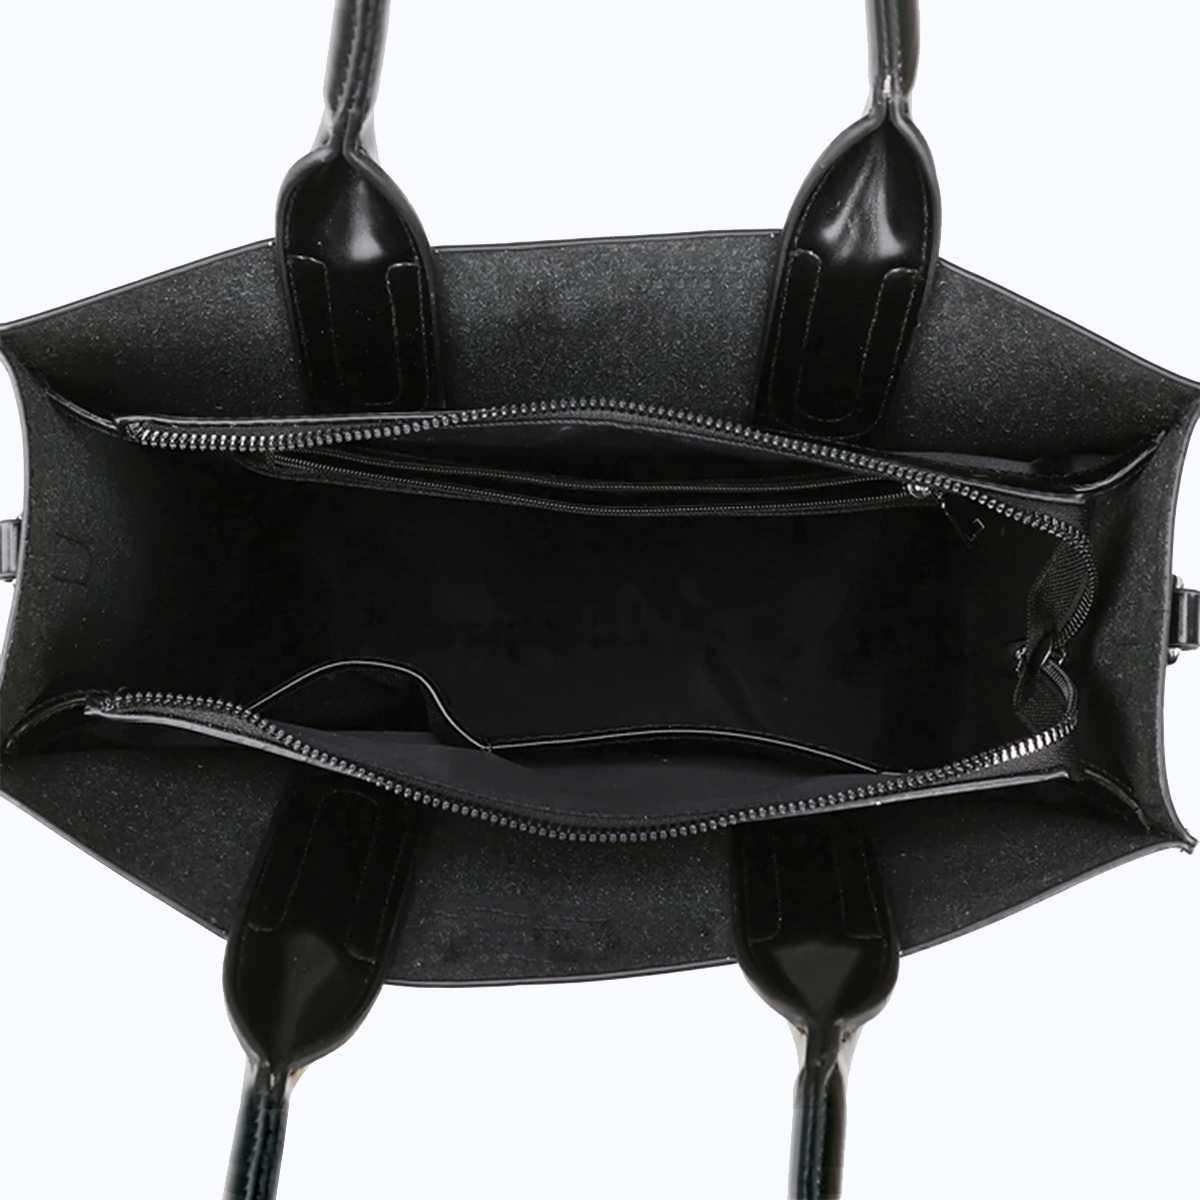 Reduce Stress At Work With Shih Tzu - Luxury Handbag V1